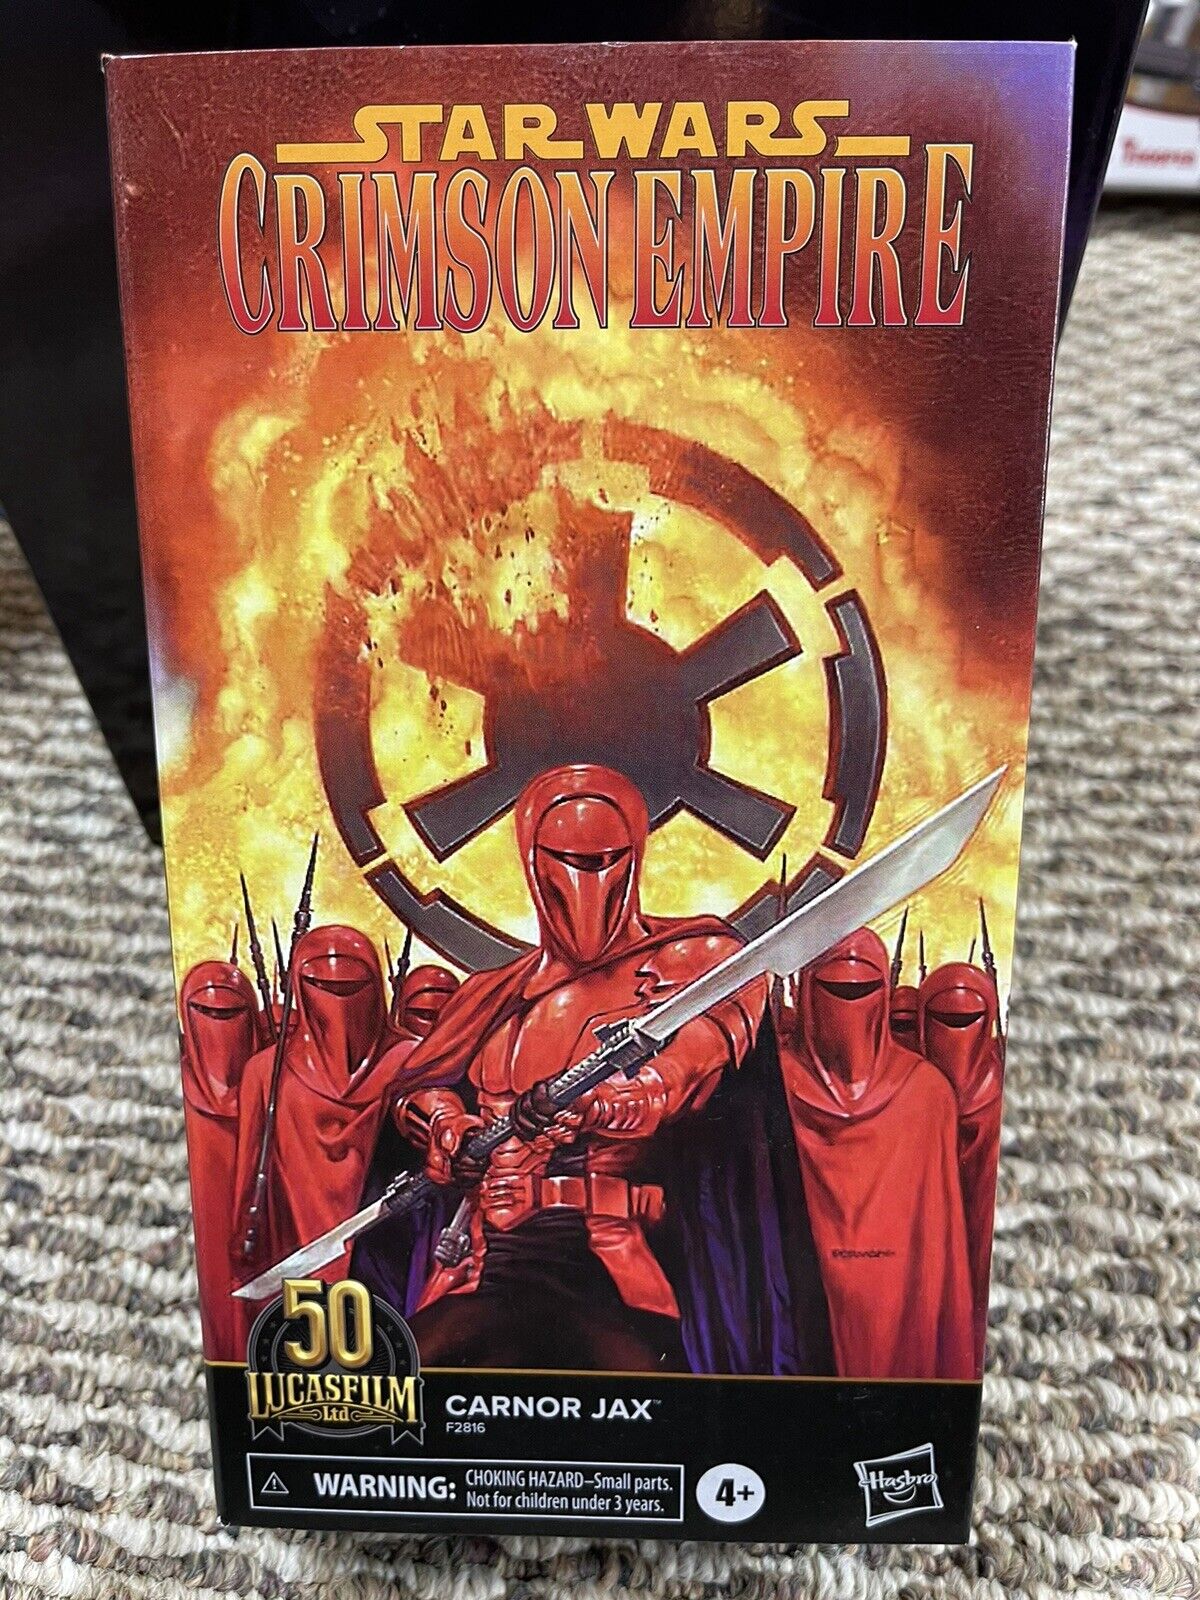 2021 Star Wars Black Series 6 inch Crimson Empire Carnor Jax Lucasfilm 50th Ann 